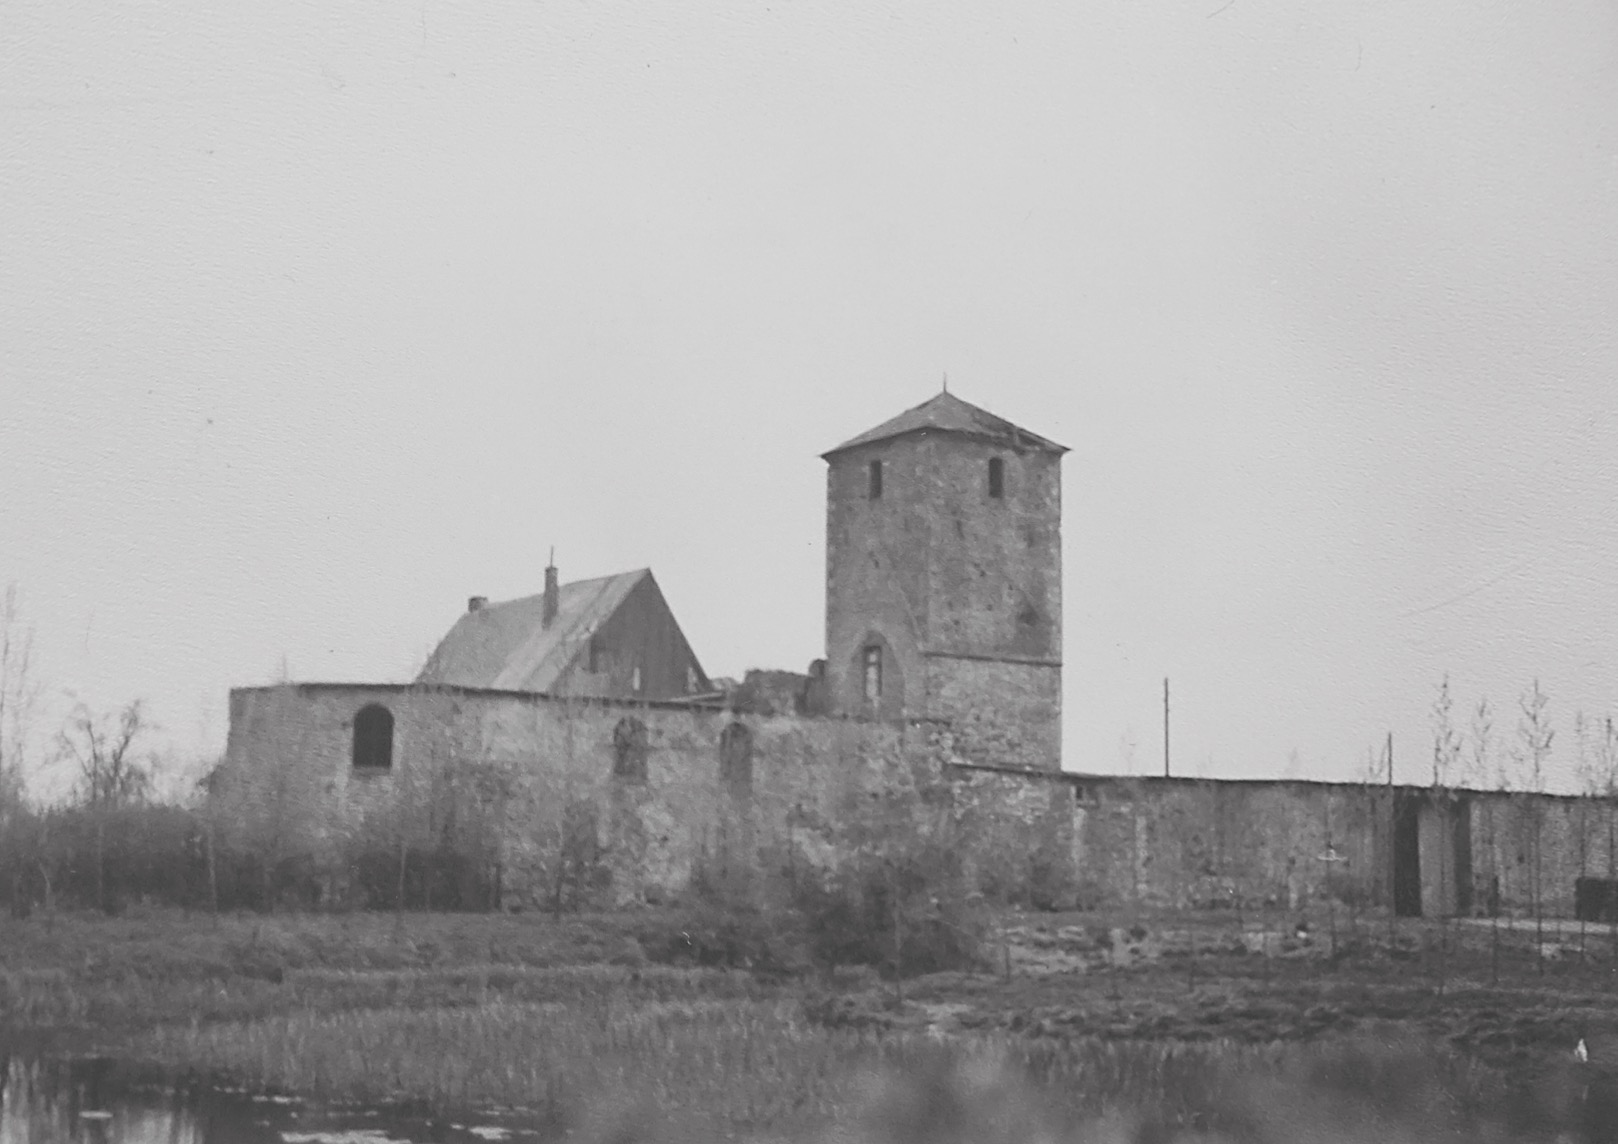 Kloster um etwa 1950 - Das Dach fehlt